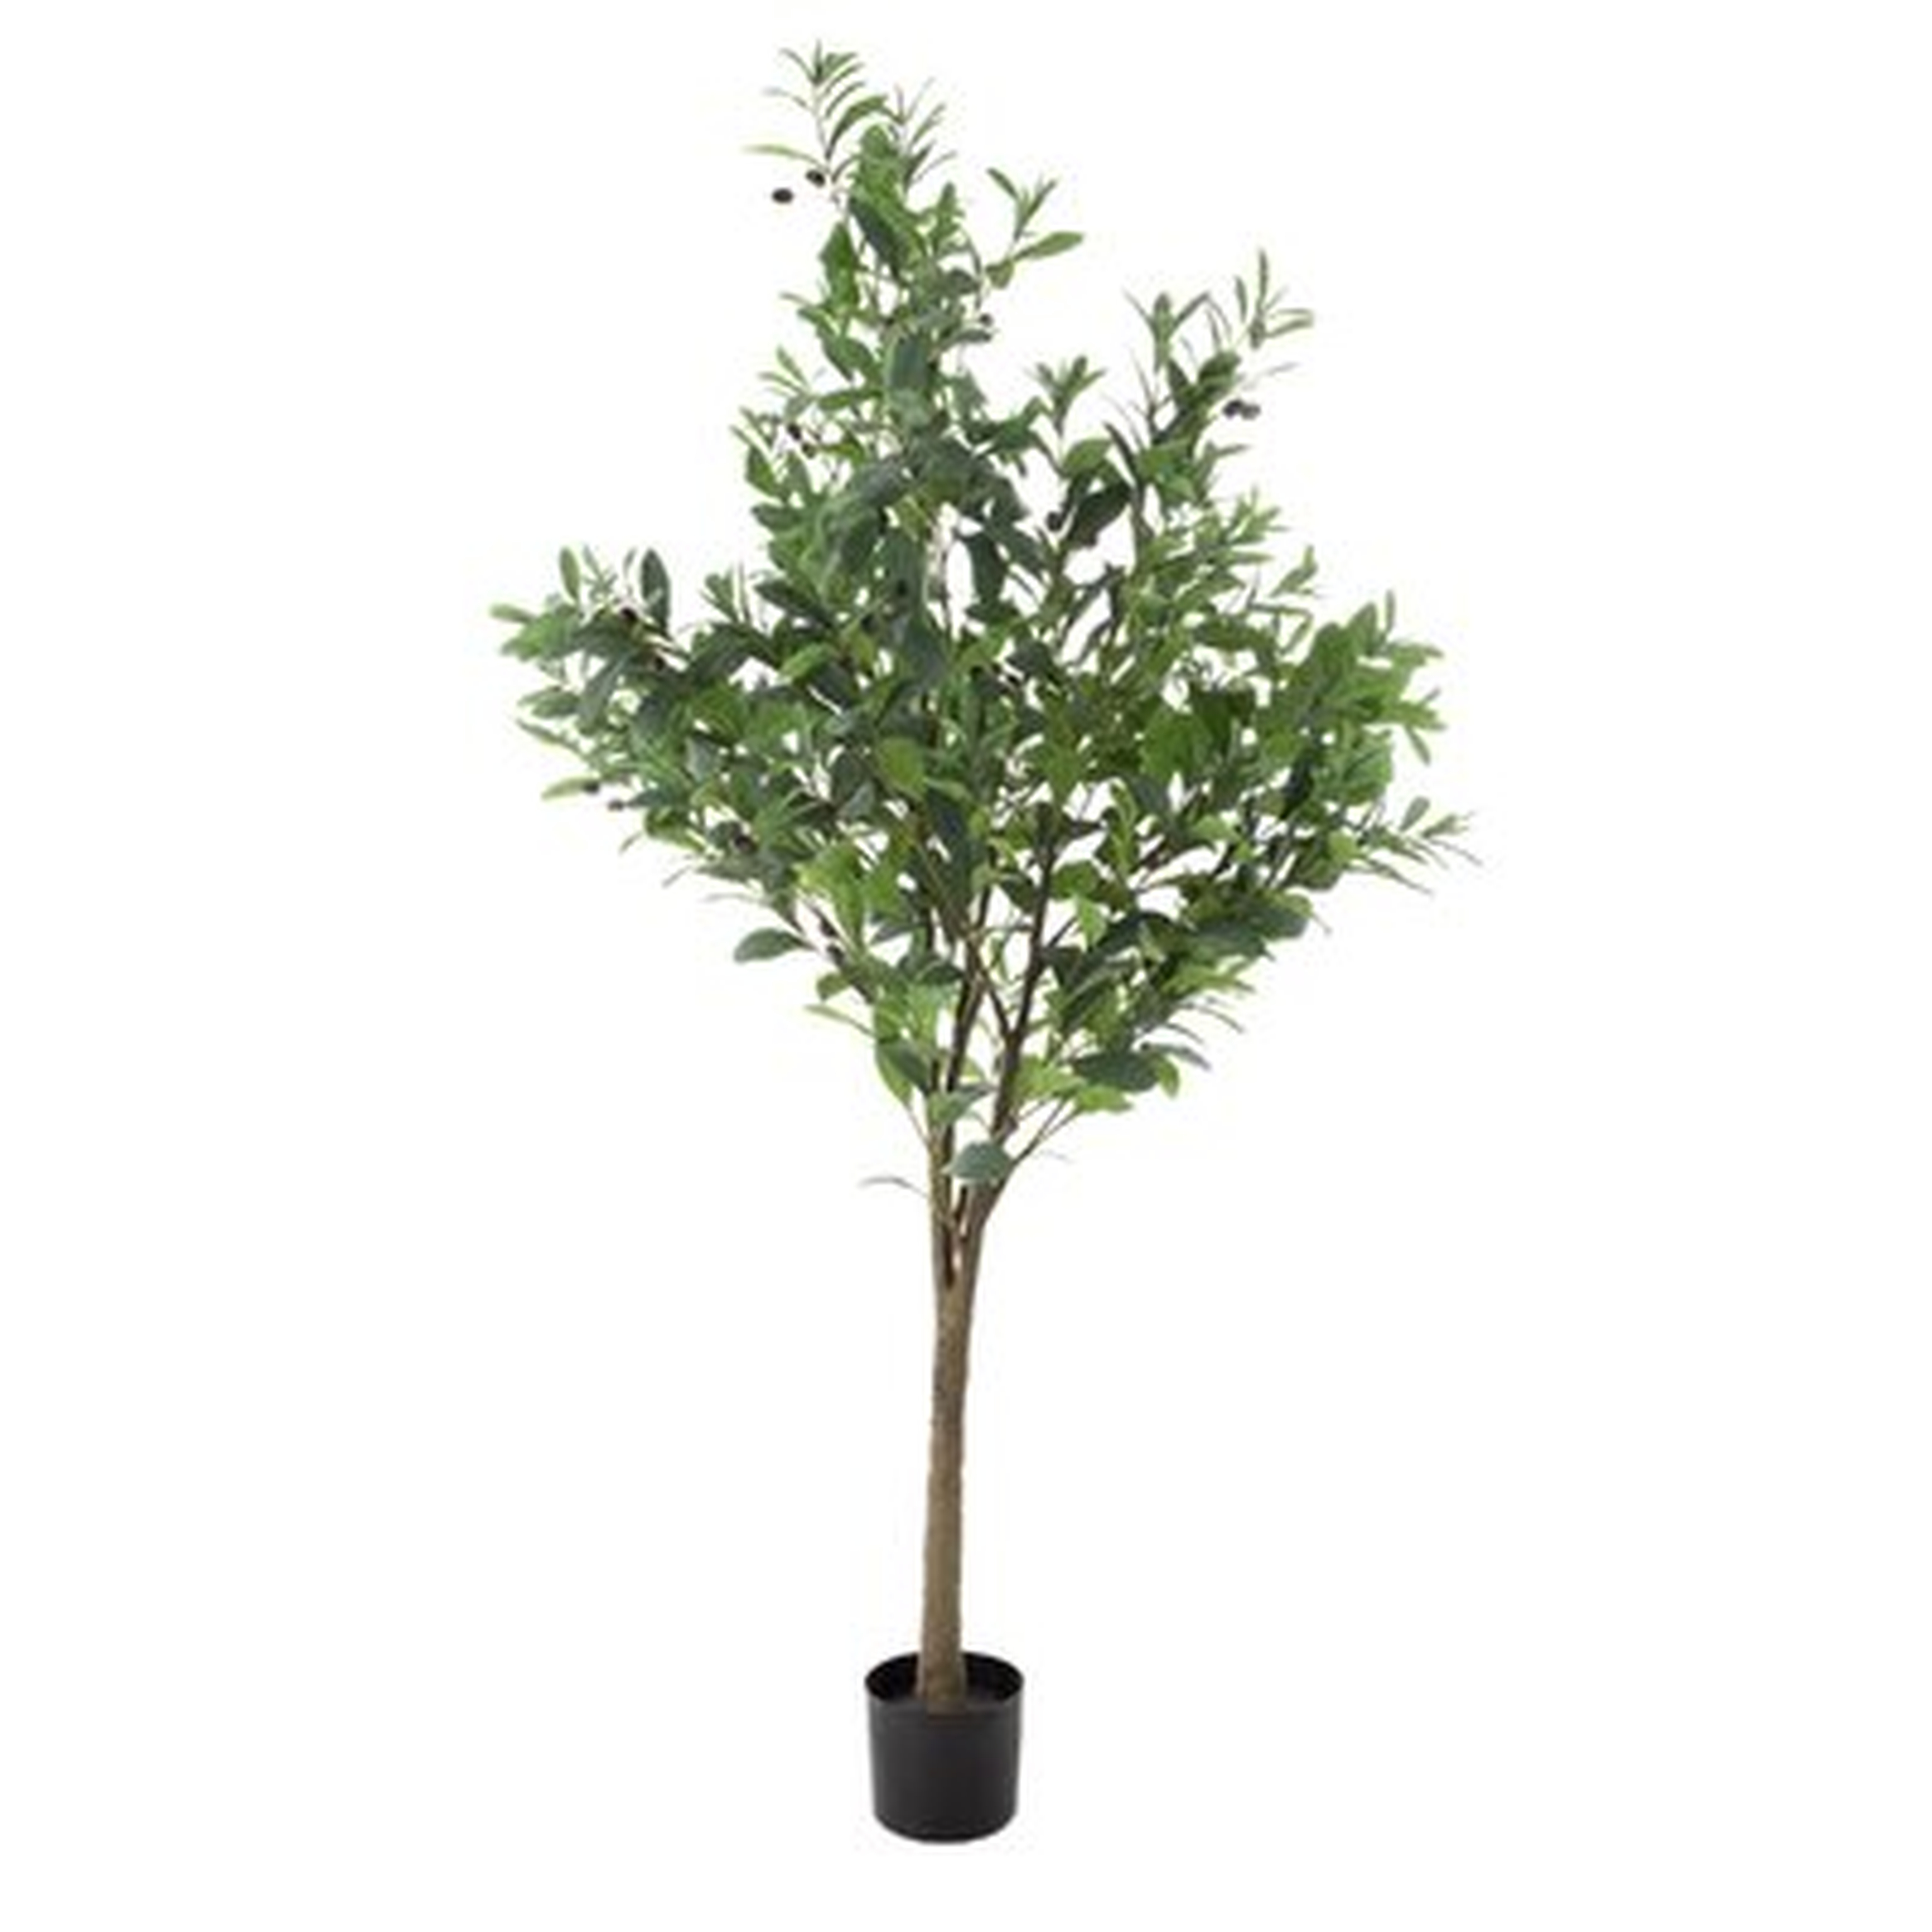 72" Artificial Olive Tree in Pot - Wayfair